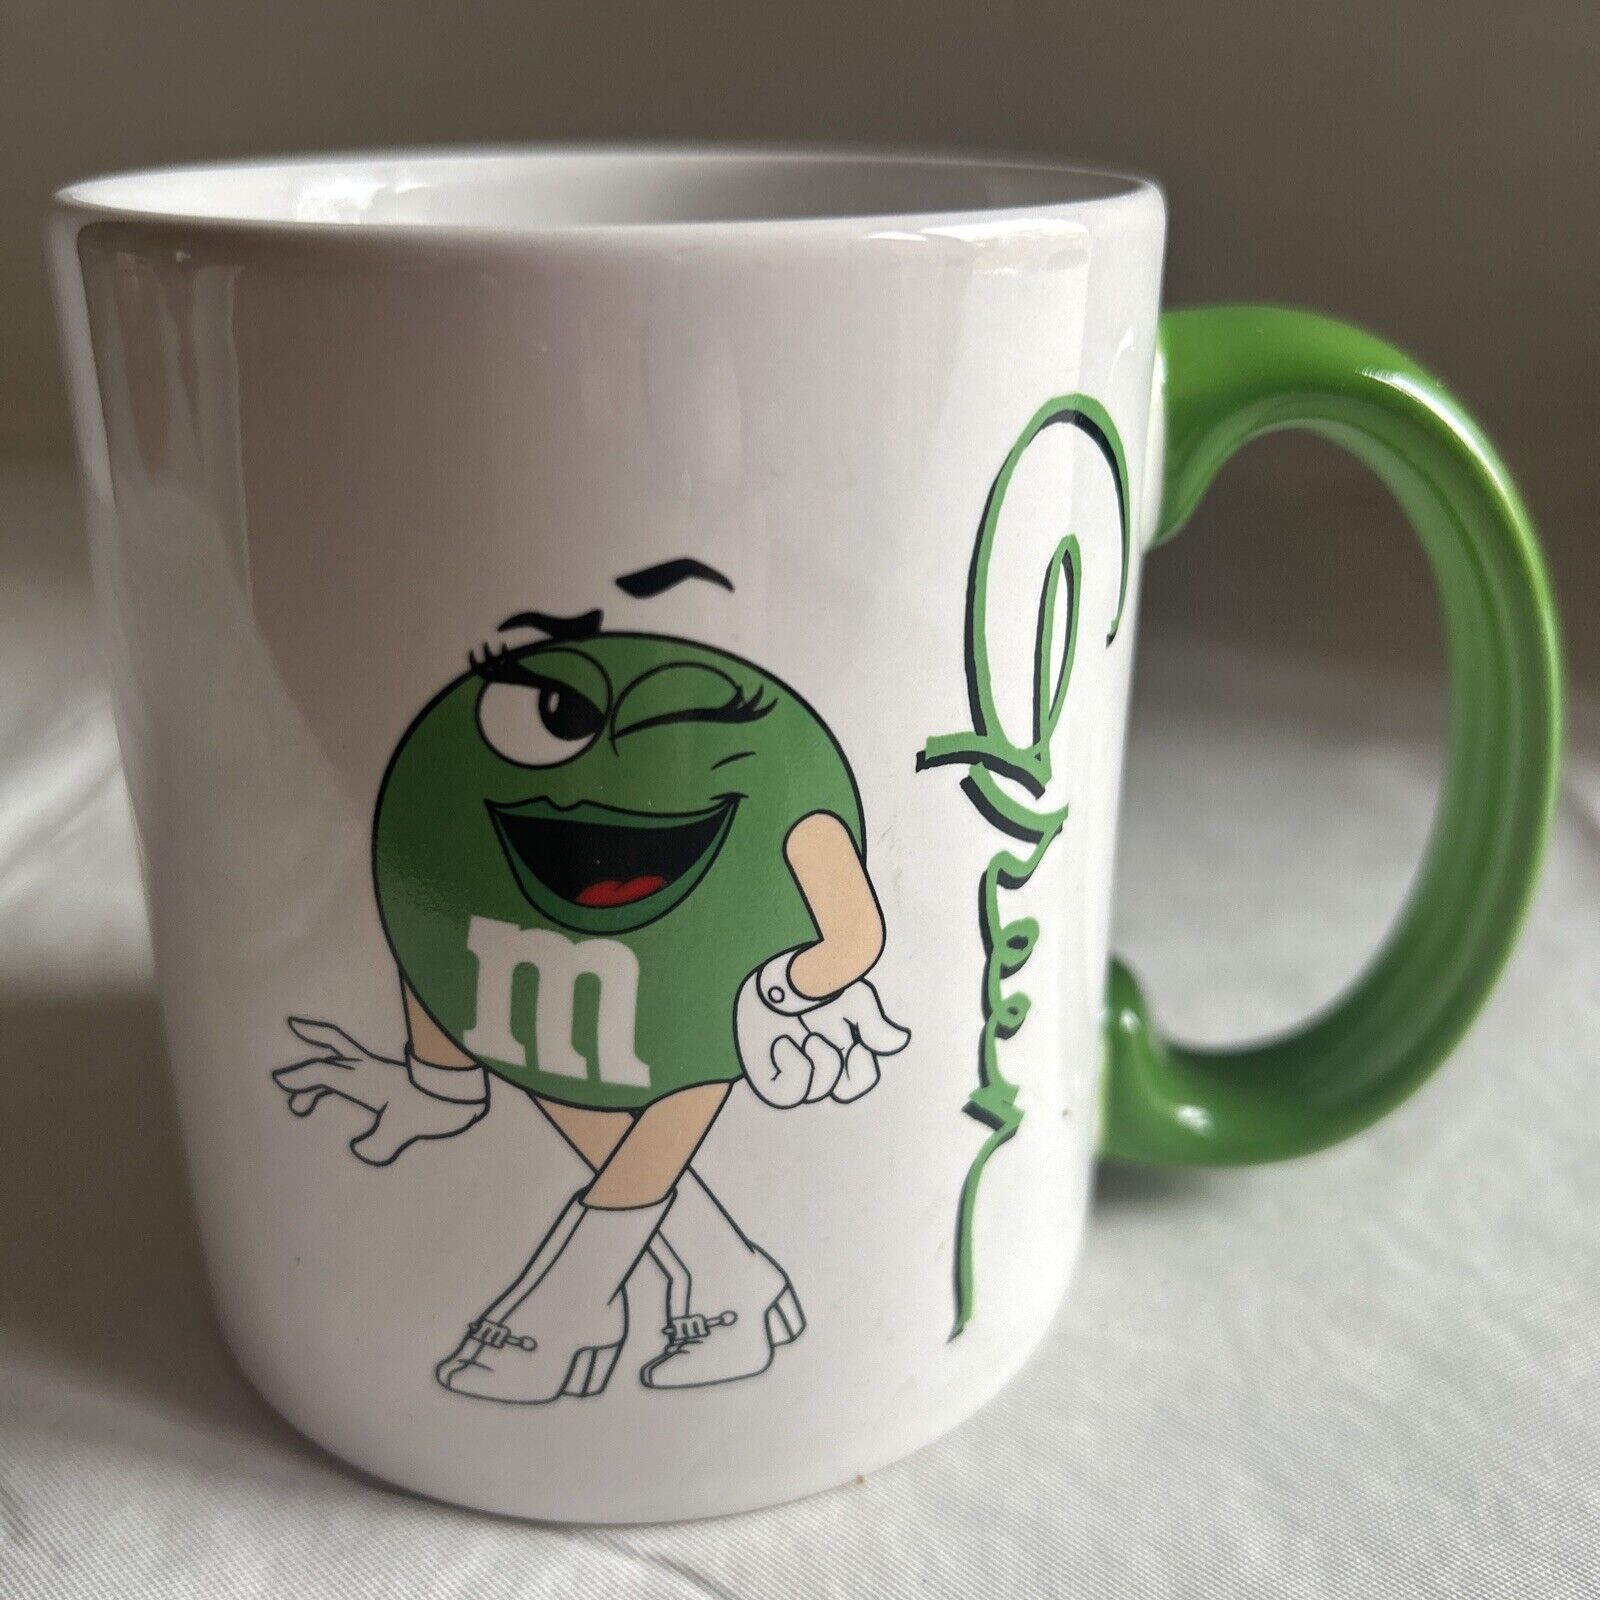 M&Ms Ms. Green Coffee Mug Mars, Inc. 2012